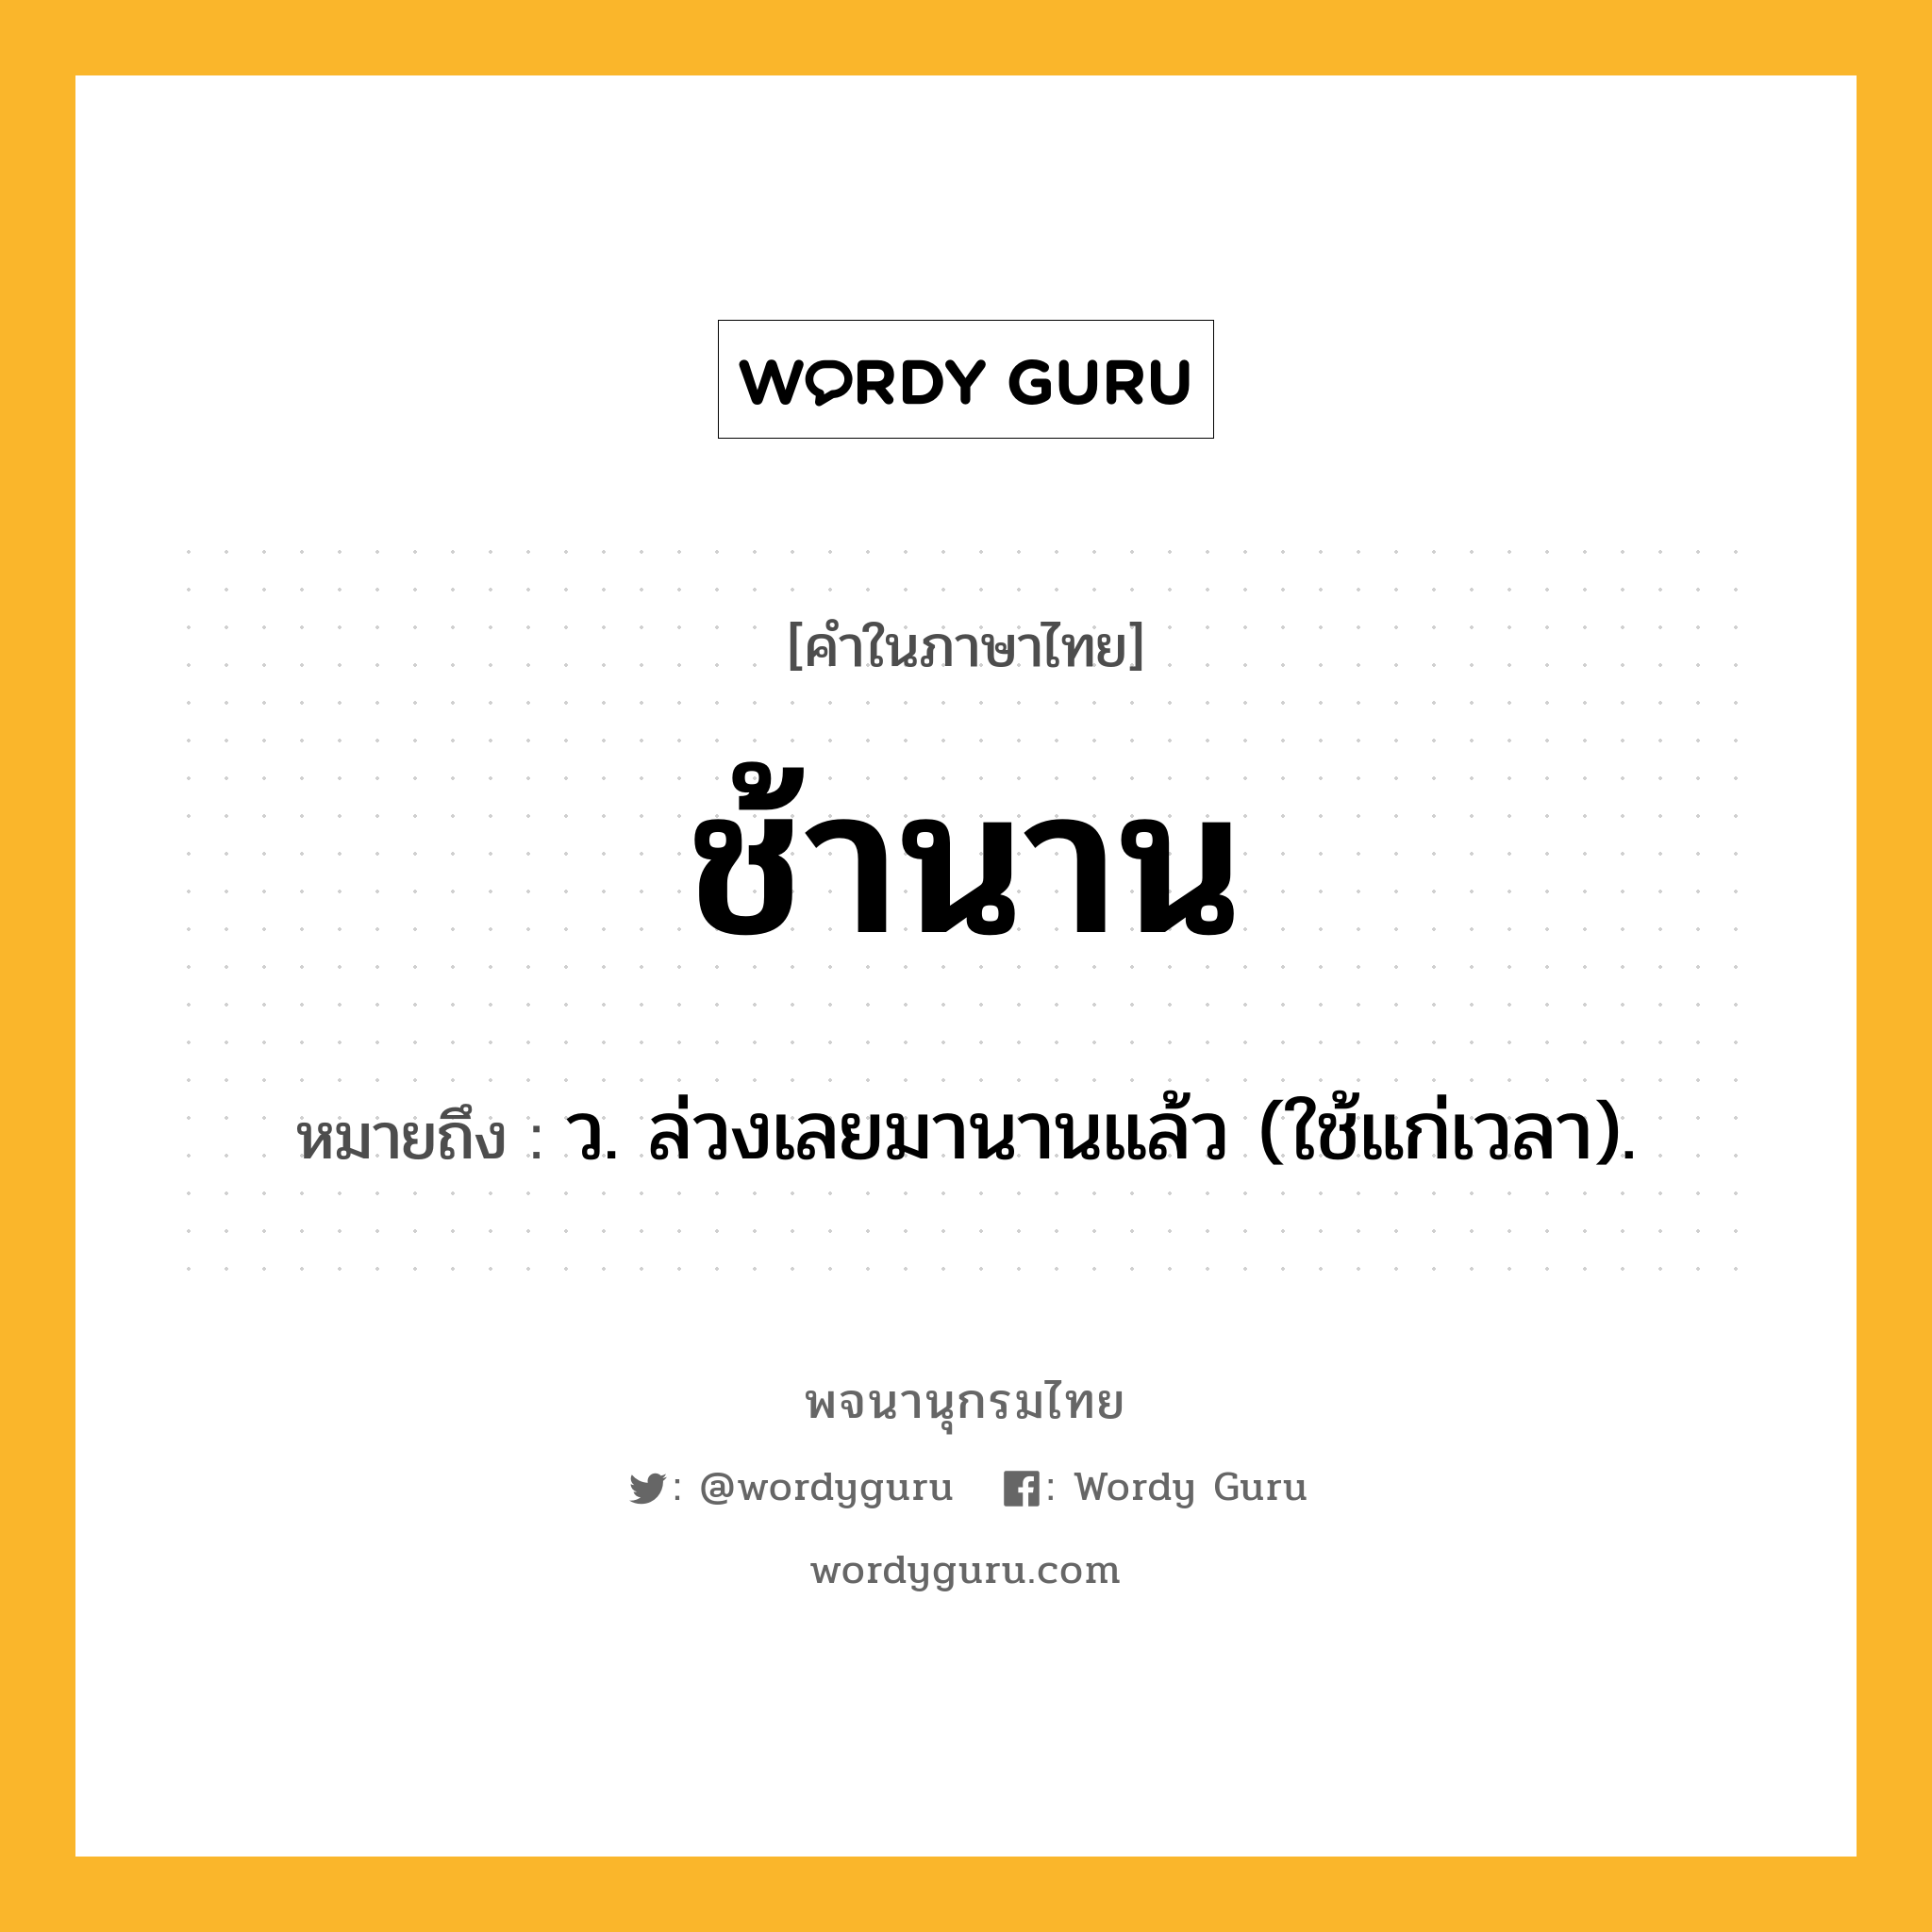 ช้านาน หมายถึงอะไร?, คำในภาษาไทย ช้านาน หมายถึง ว. ล่วงเลยมานานแล้ว (ใช้แก่เวลา).